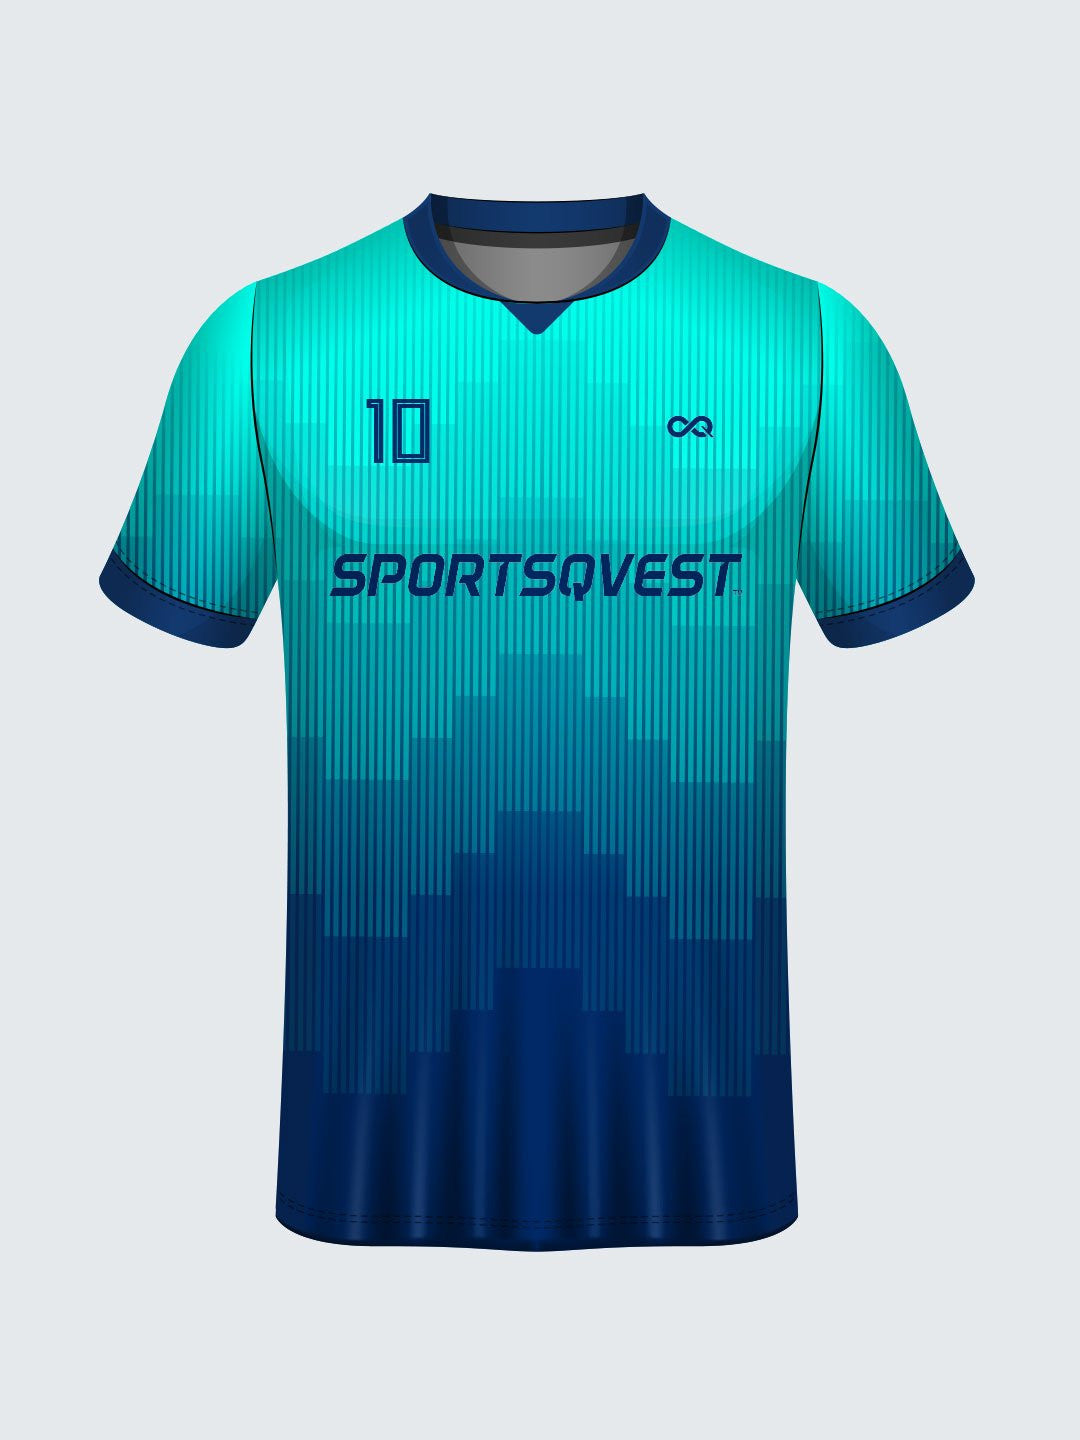 best cricket jersey designs 2019